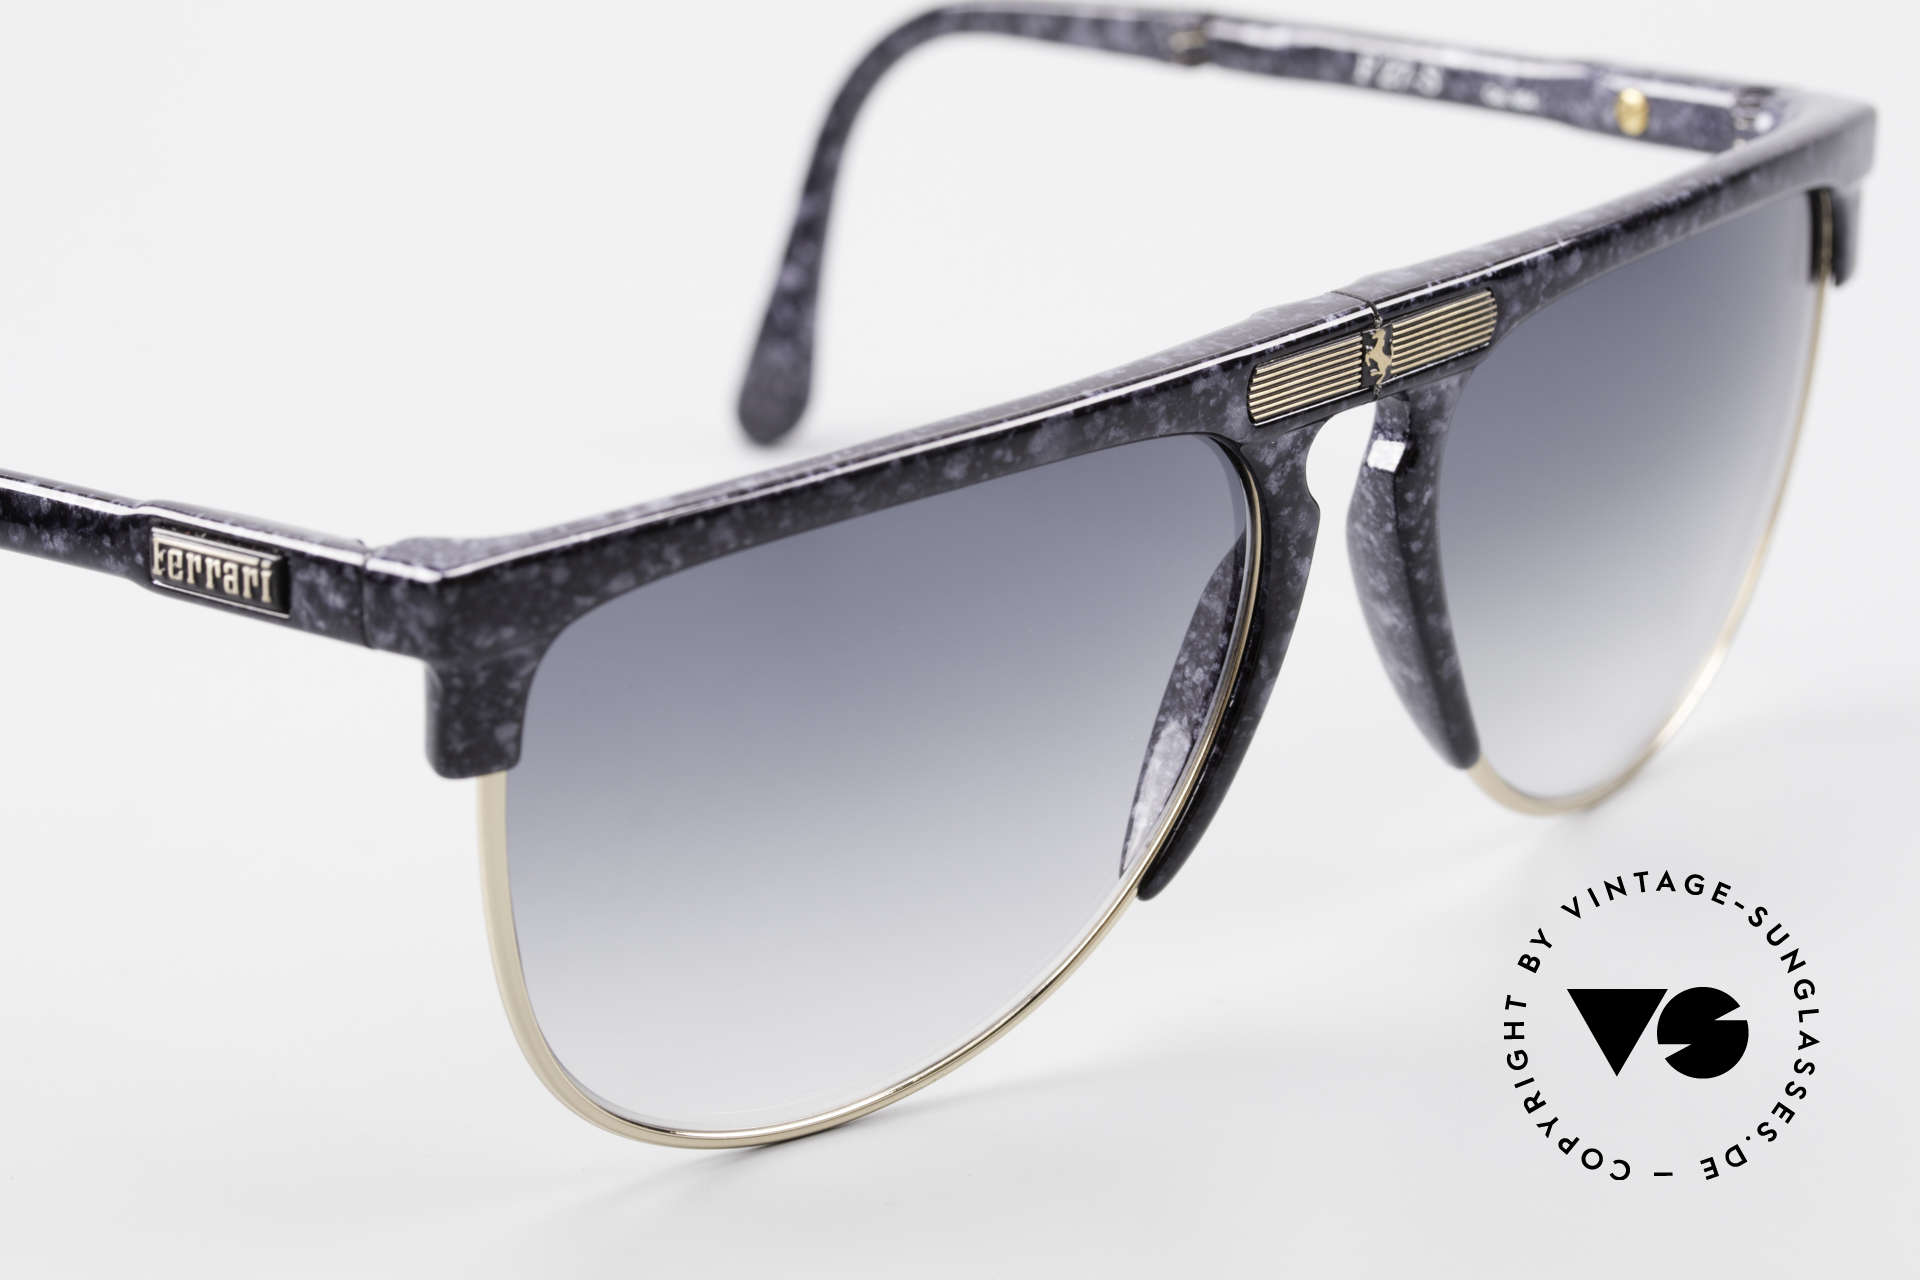 Ferrari F27/S Rare Karbon Faltsonnenbrille, ungetragen (wie alle unsere vintage Sonnenbrillen), Passend für Herren